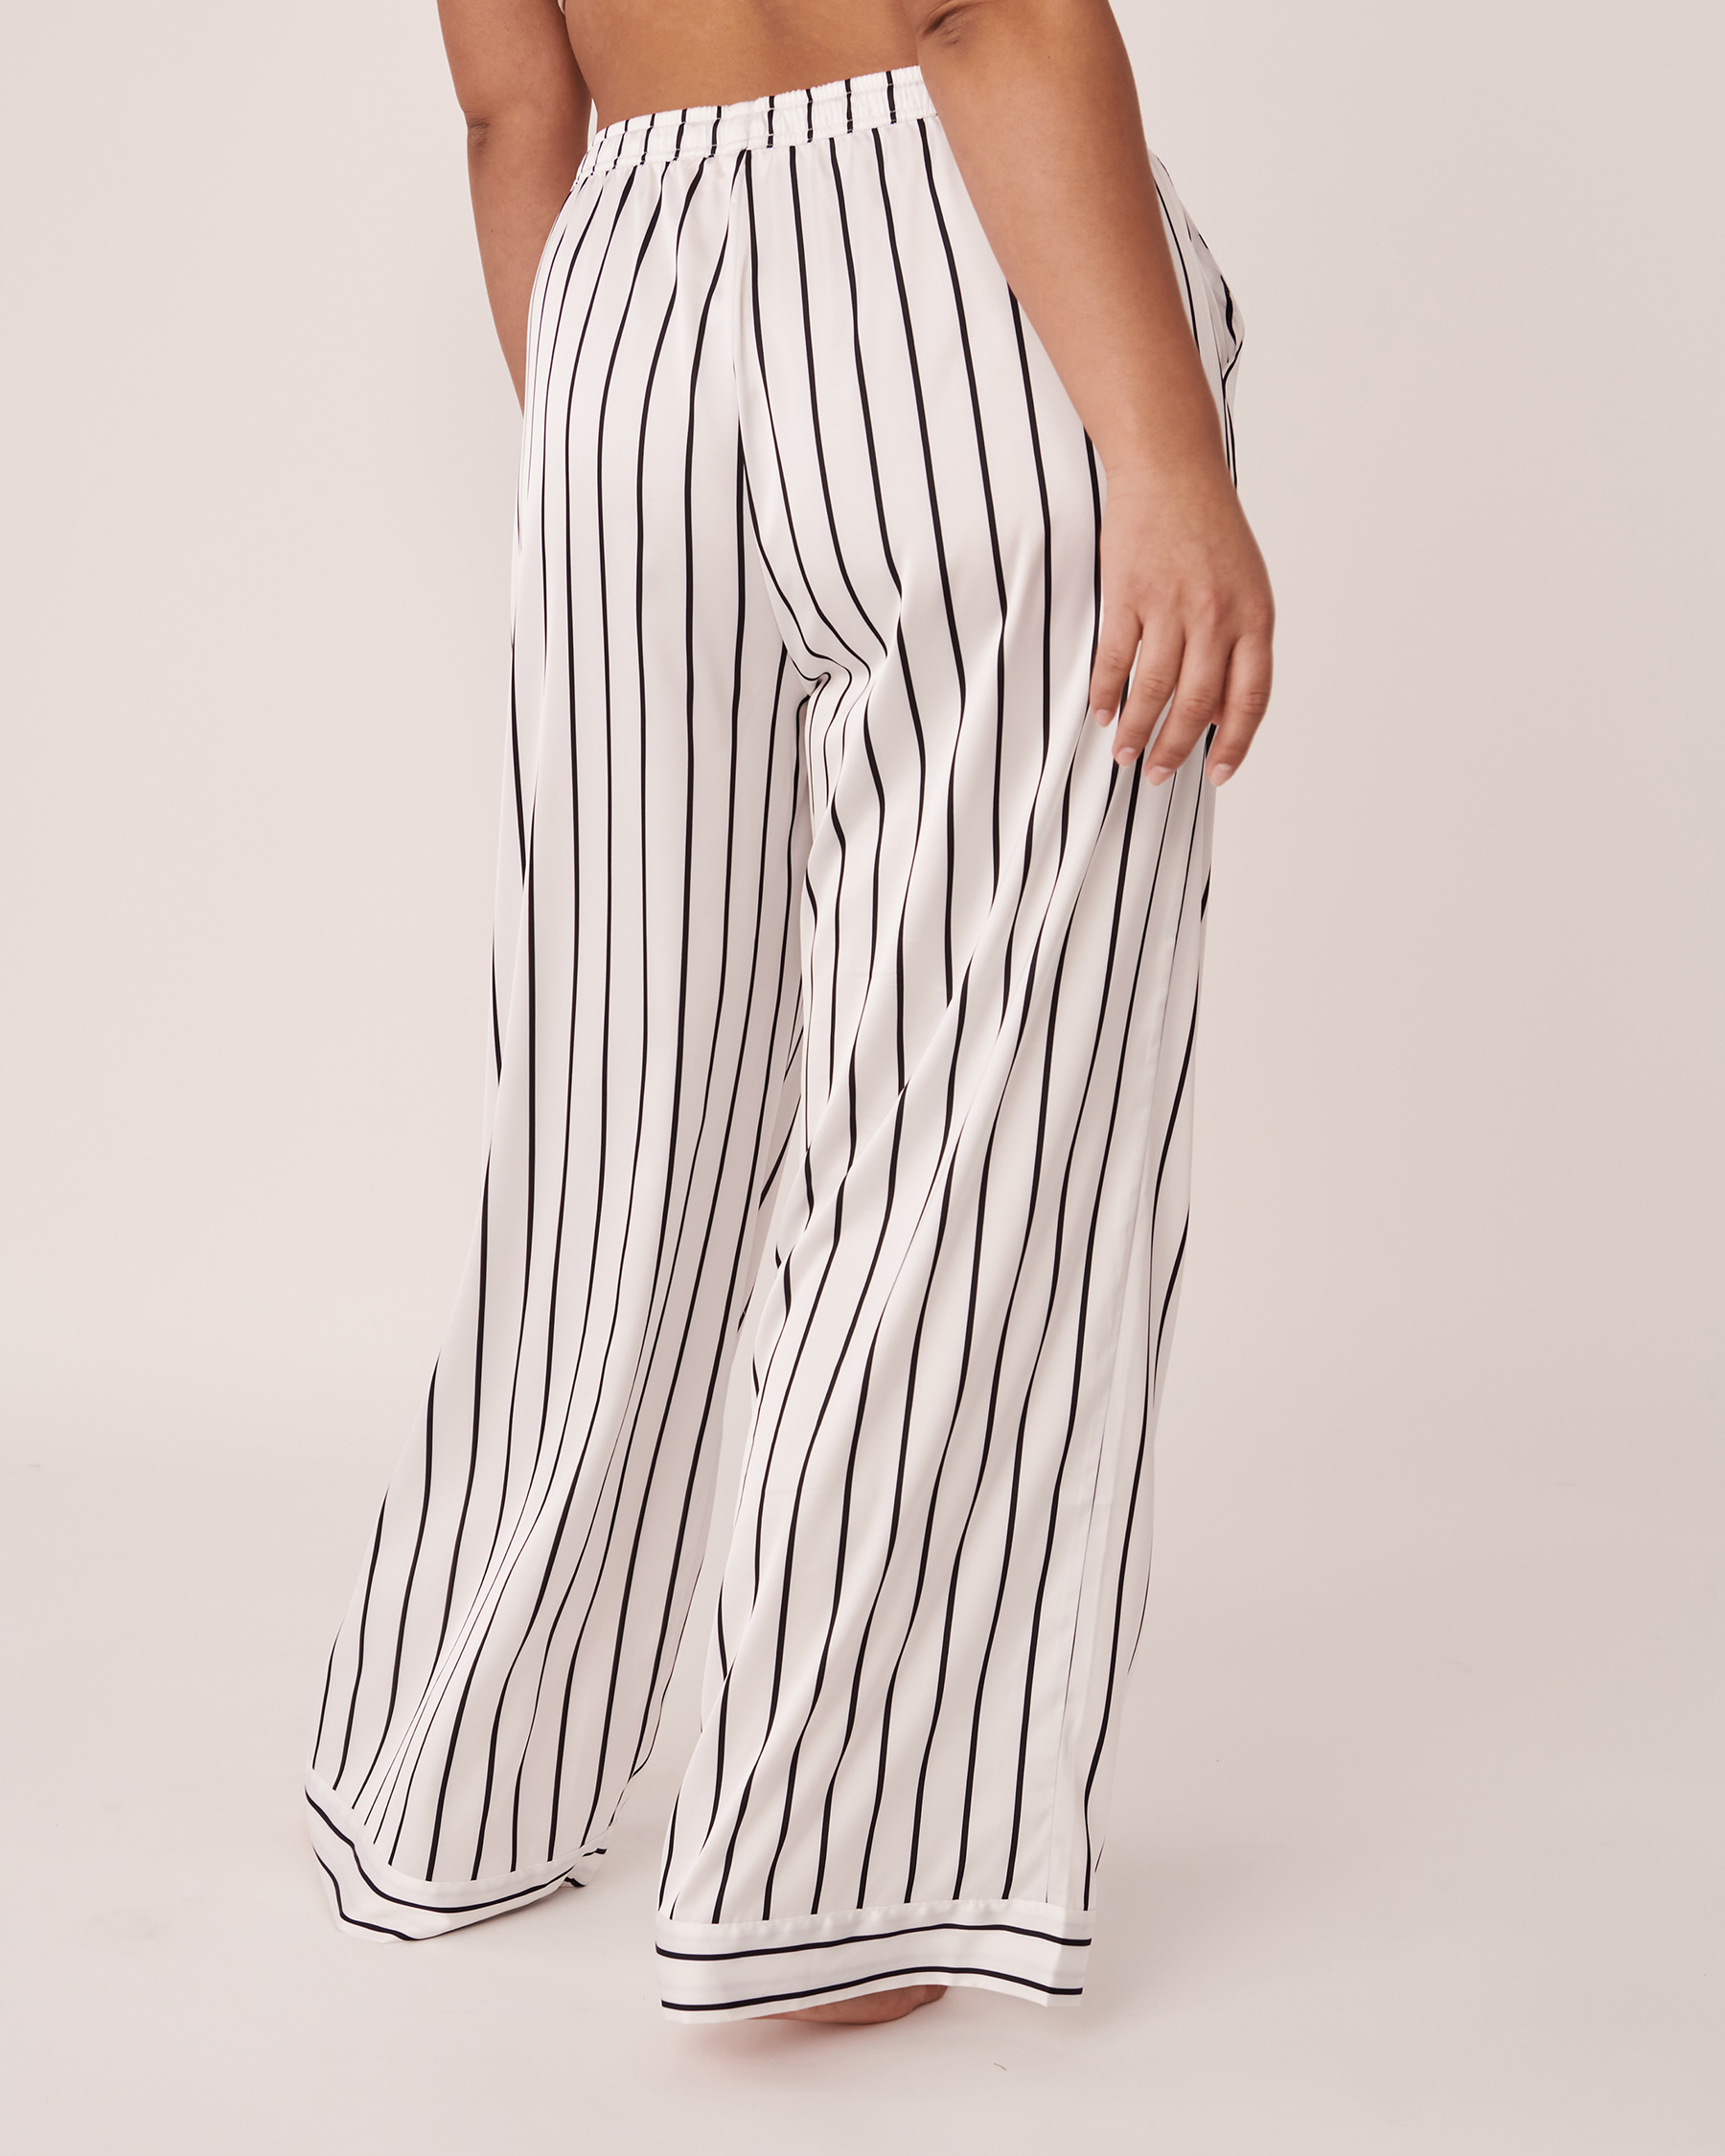 LA VIE EN ROSE Striped Satin Pants Black and white stripe 60200058 - View2